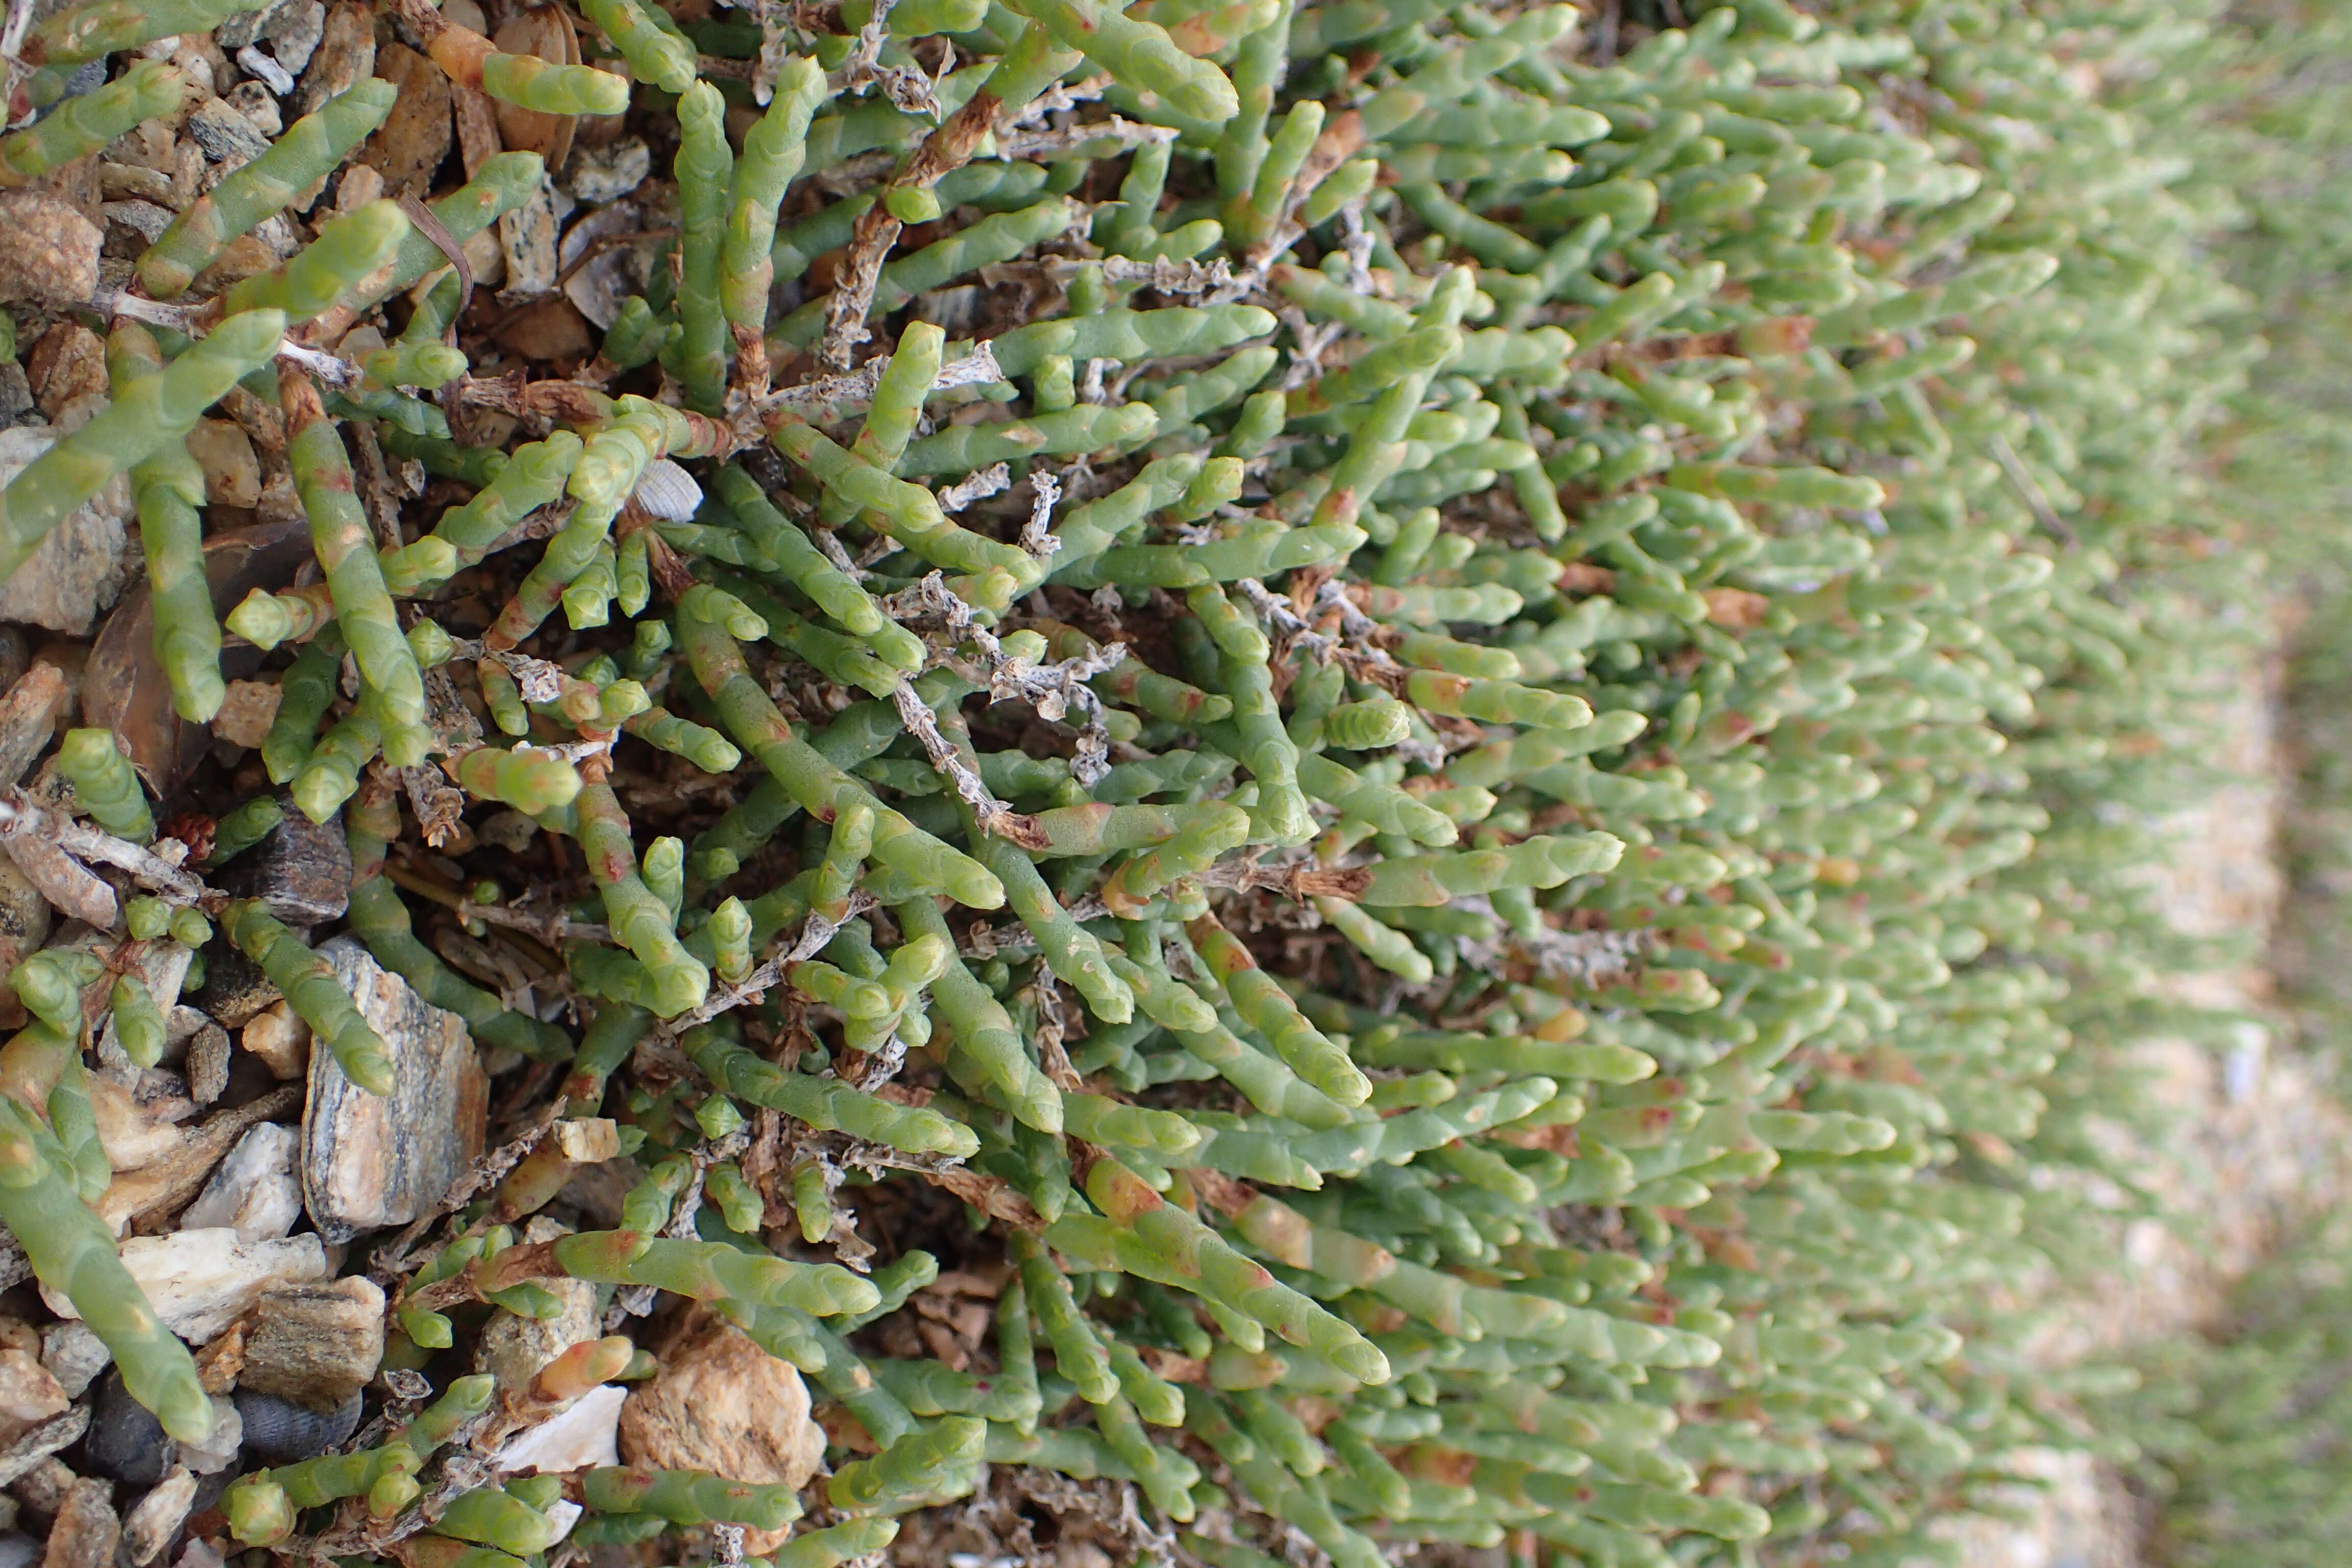 Image of Salicornia quinqueflora subsp. quinqueflora